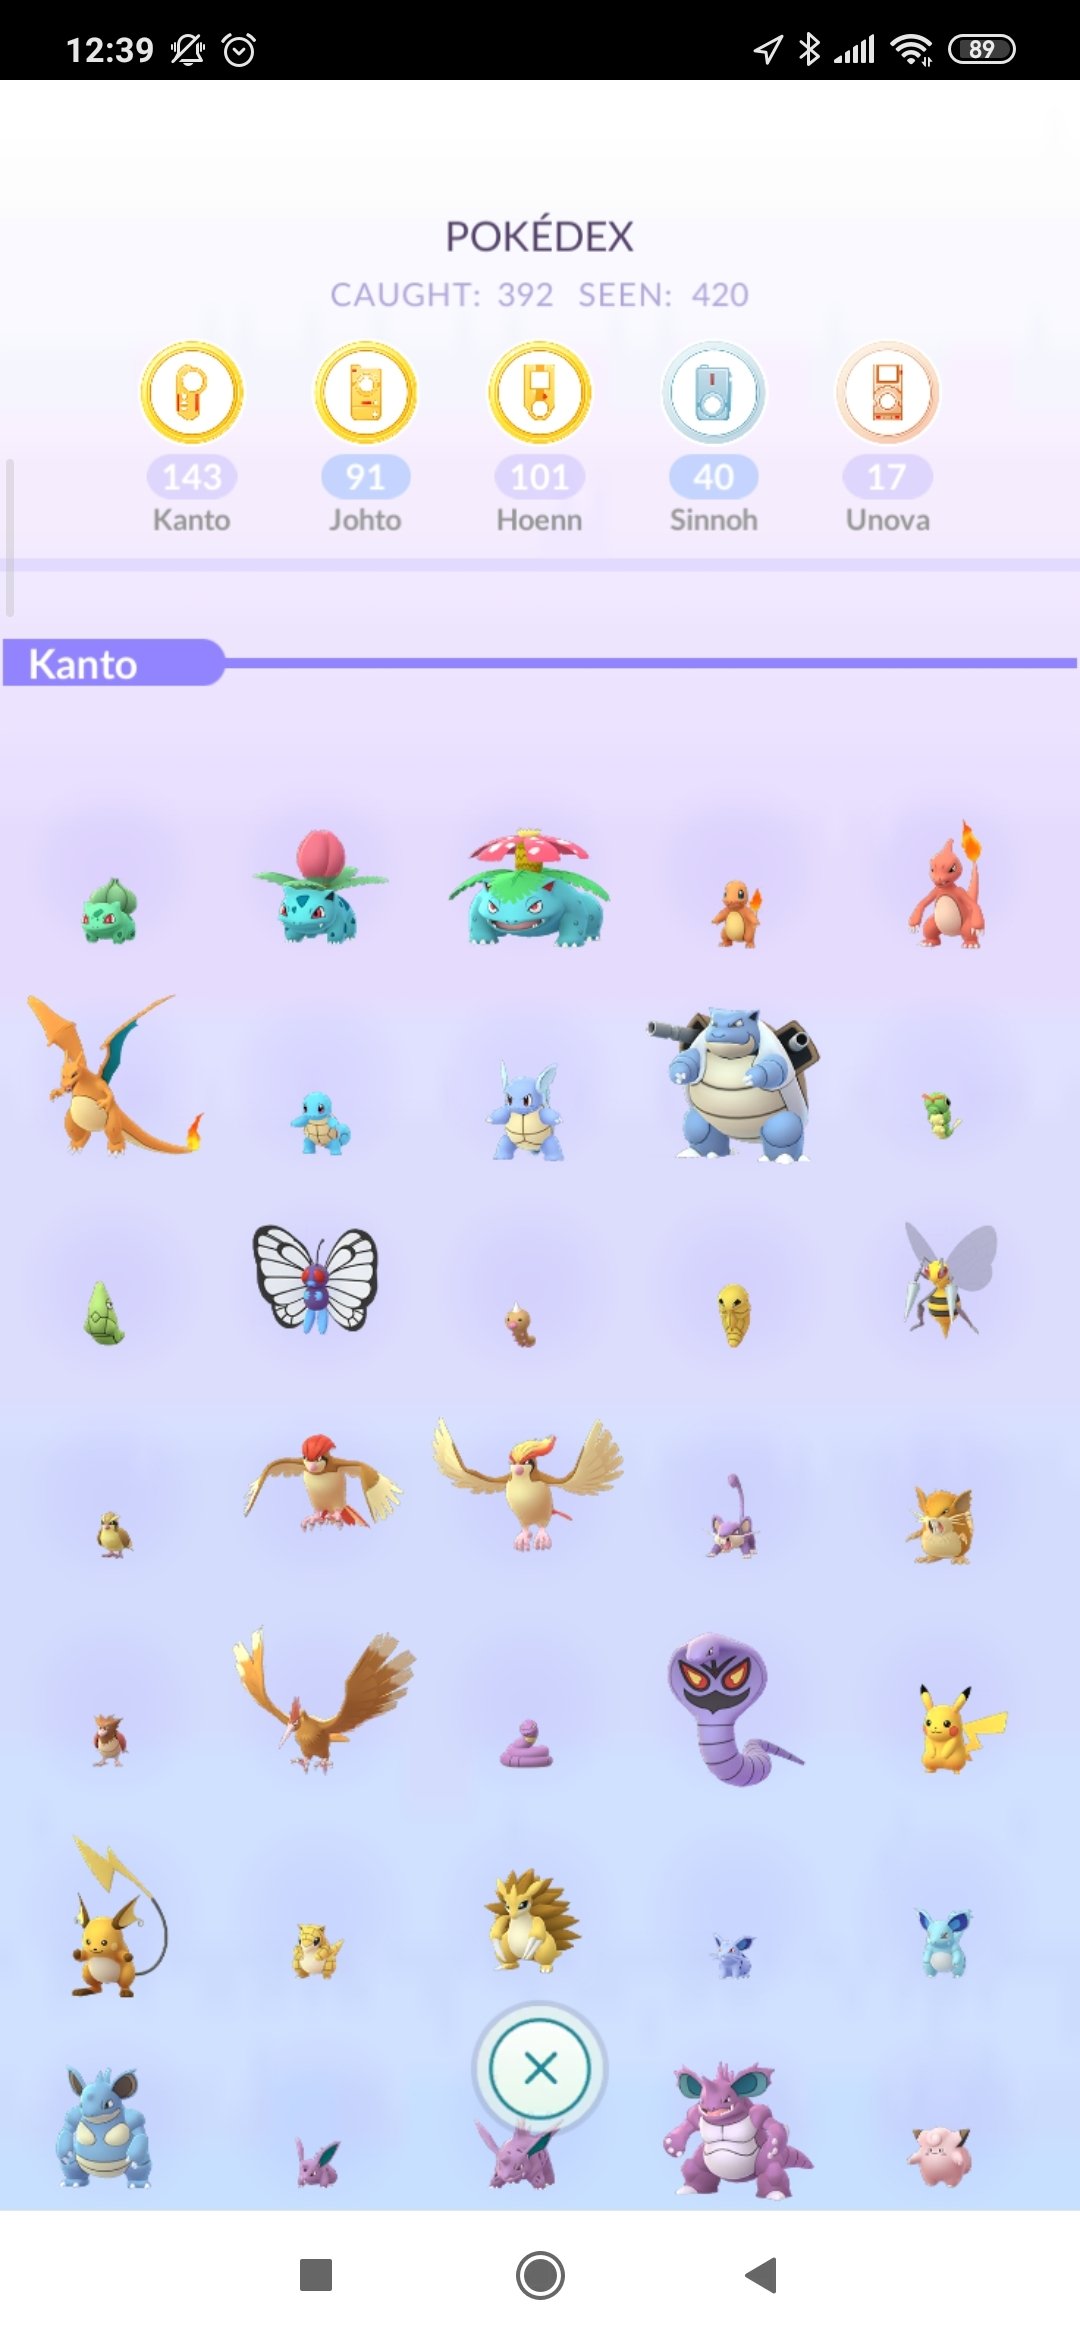 Pokémon GO 0.241.0 - Download für Android APK Kostenlos